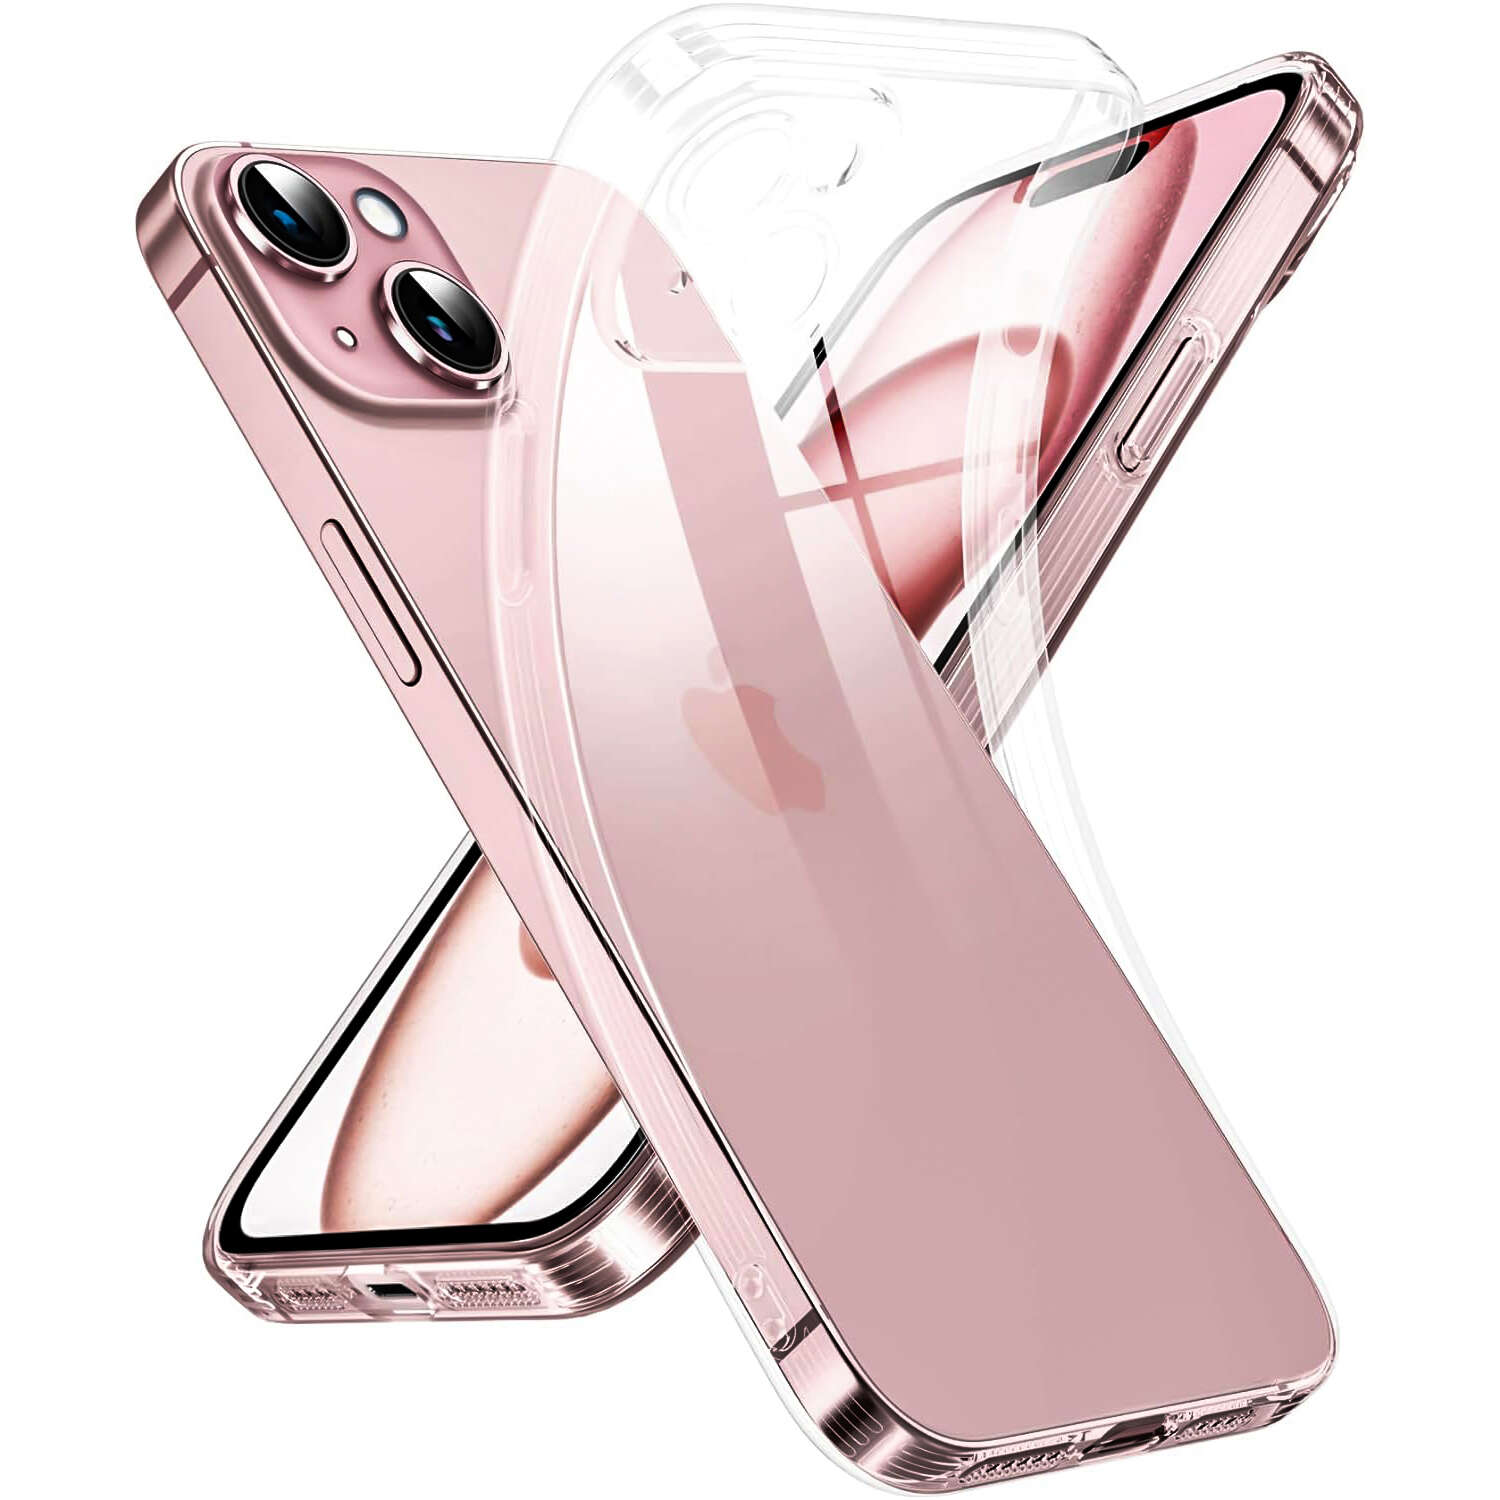 Hülle für iPhone 15 Pro Max Gehäuse Case Silikon Transparent Kameraschutz  Objektivschutz Alogy Slim Glass - 4KOM